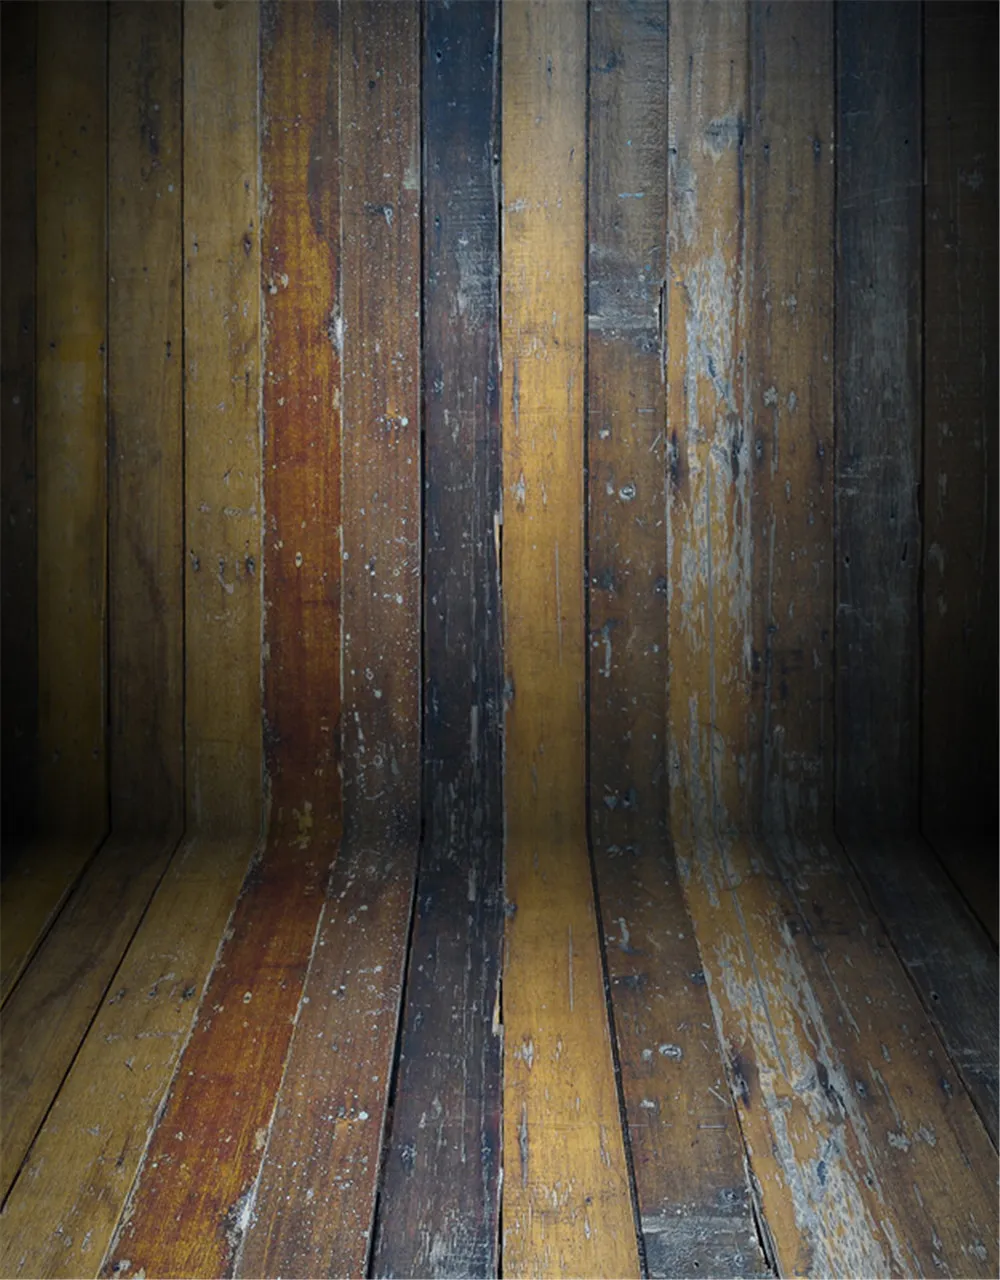 خمر خشبية الملمس جدار الطابق الخلفيات التصوير للطفل الوليد الأطفال أطفال صورة صور الخلفيات التصوير الدعائم